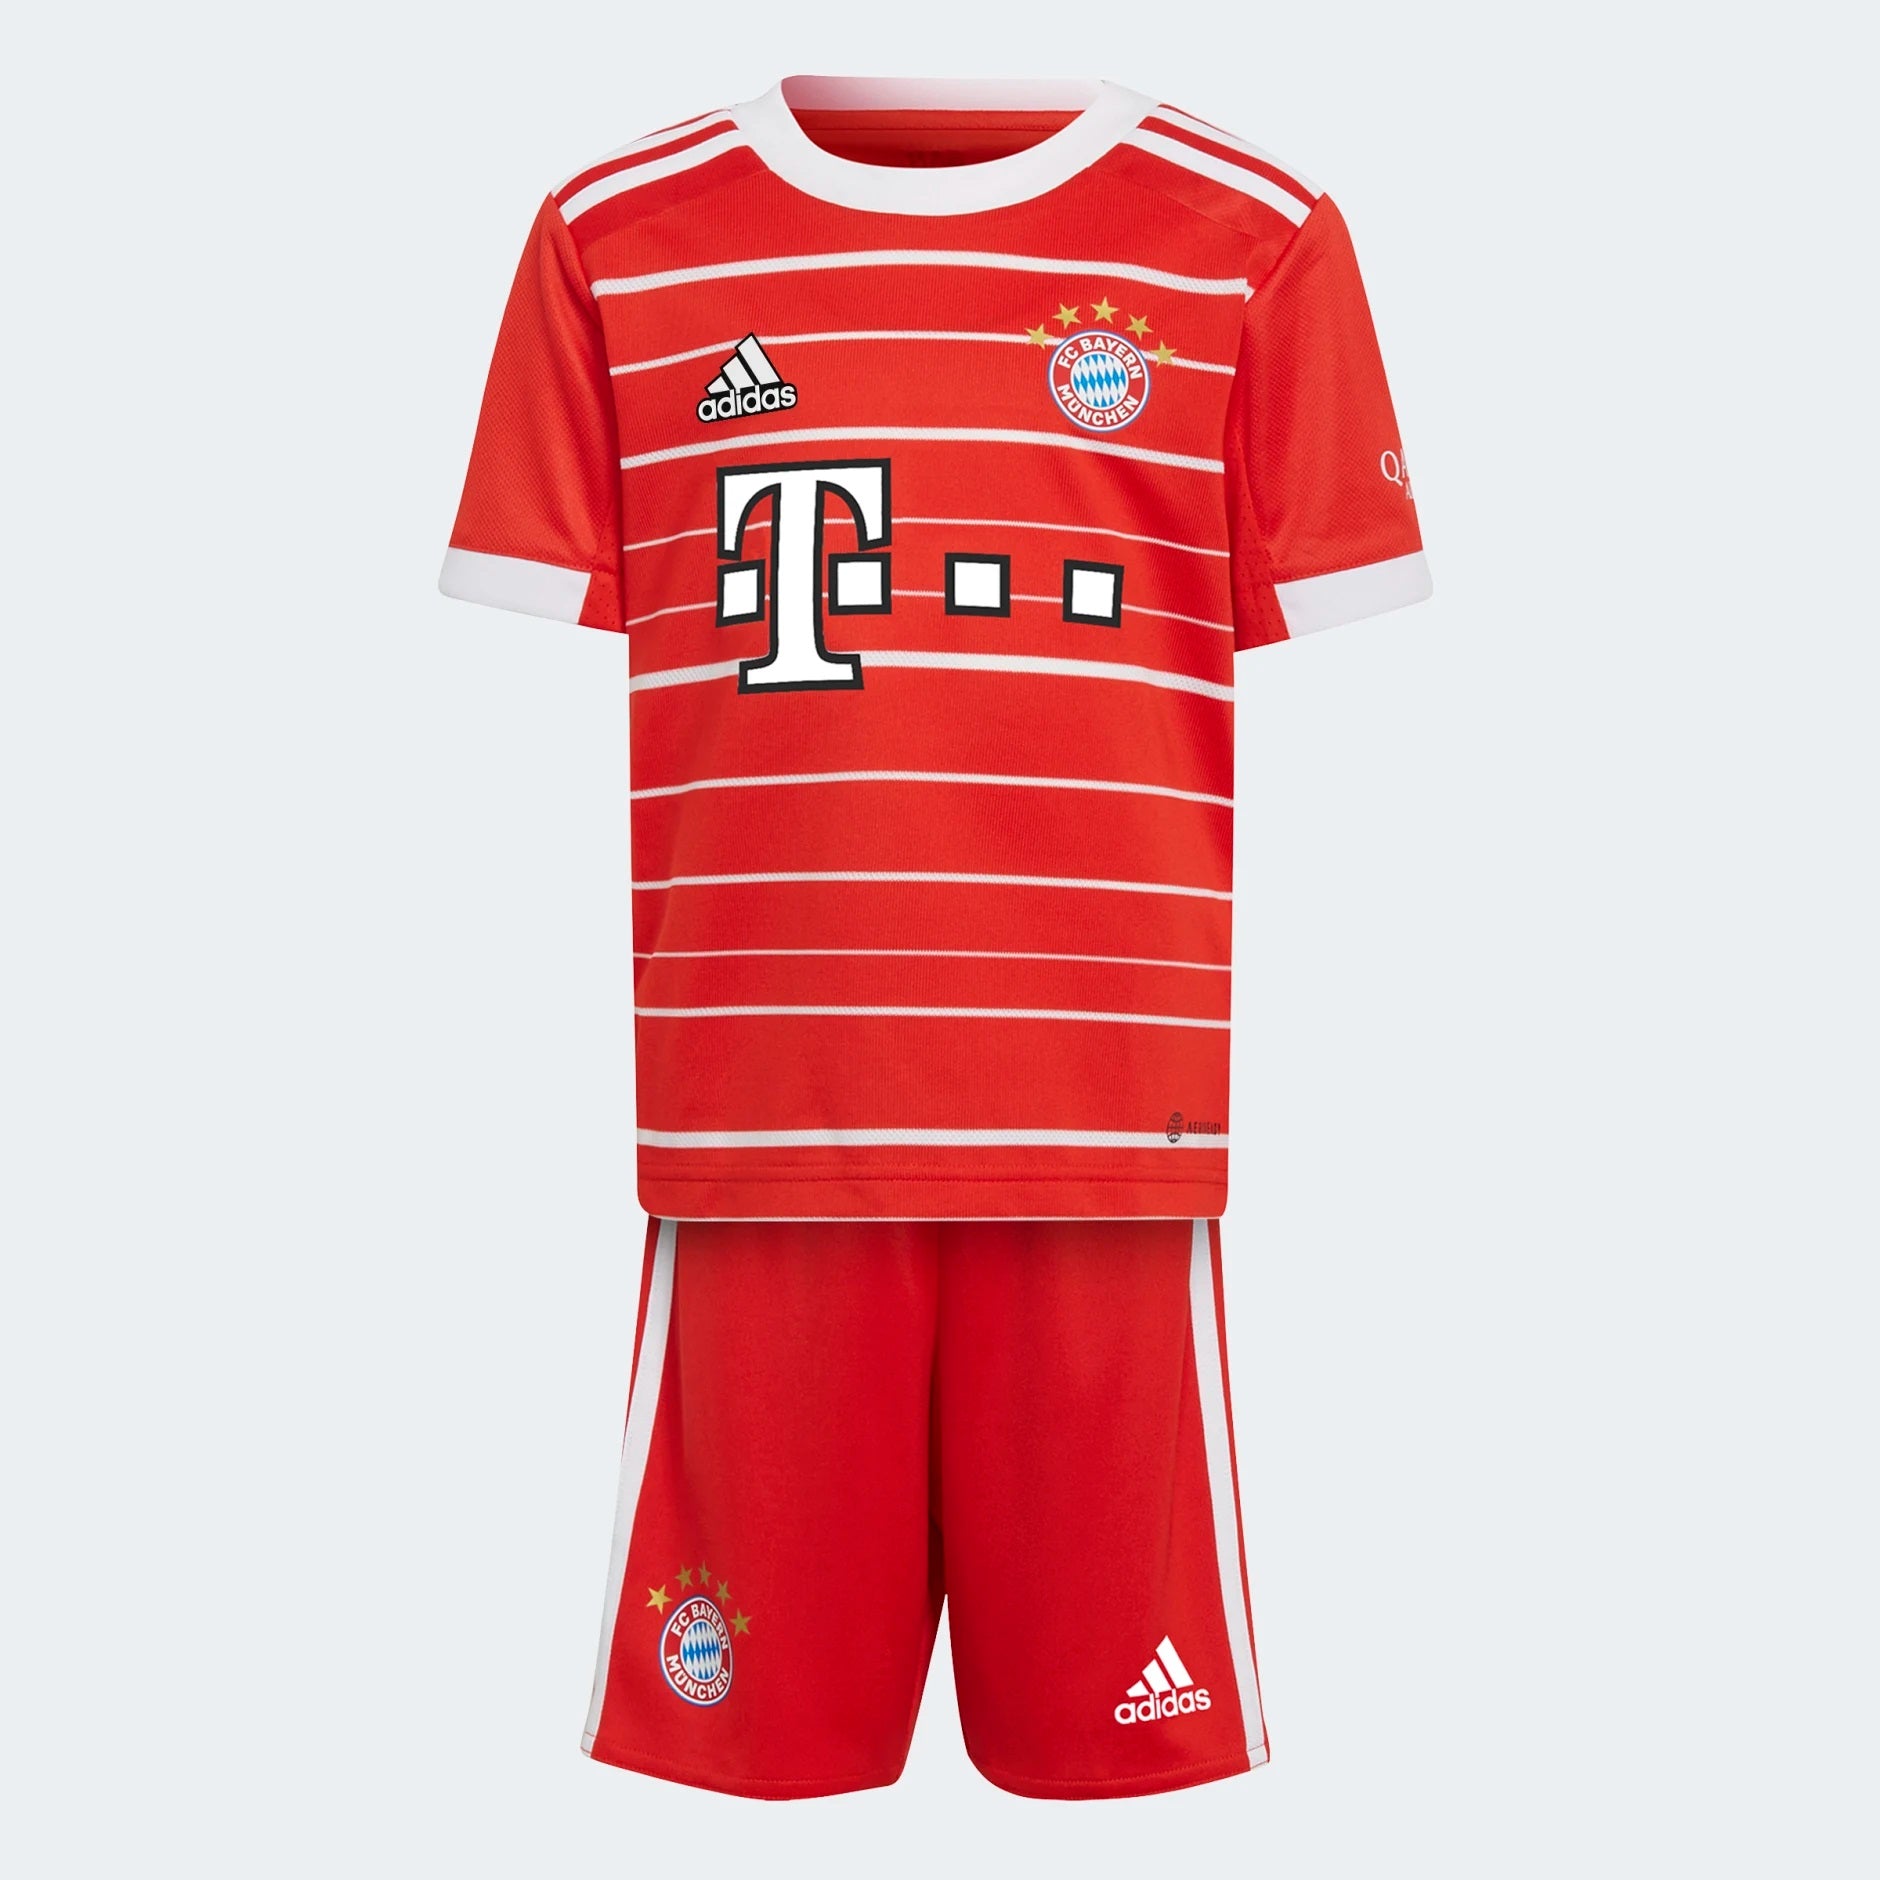 2022-23 Bundesliga Kit Overview - All 51 Football Shirts 